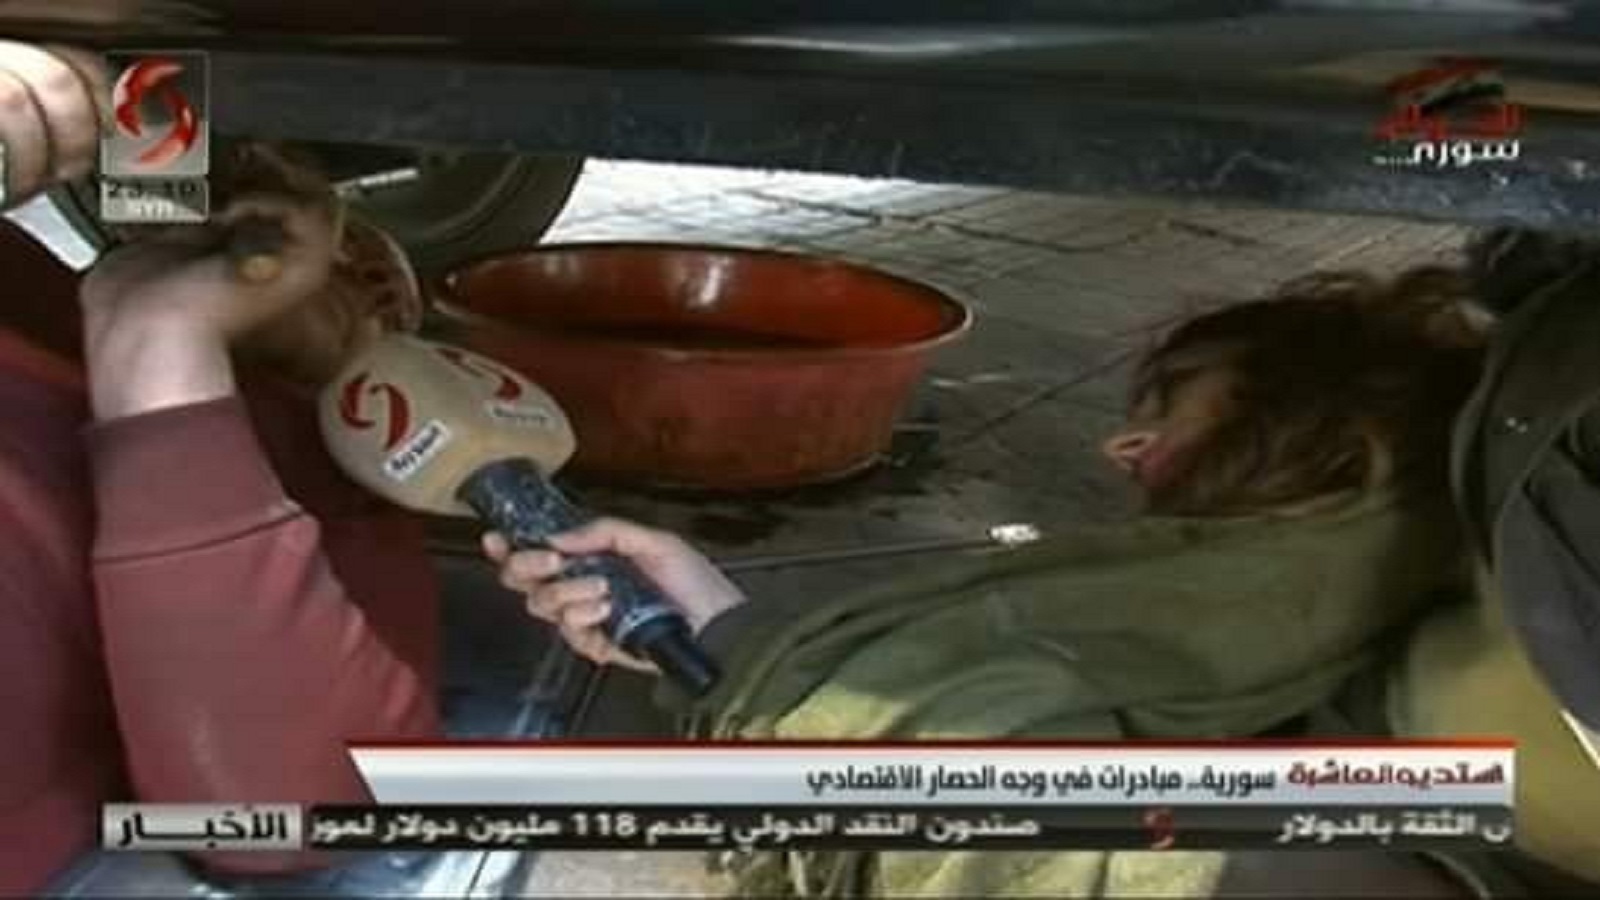 مذيعة "الإخبارية السورية" تفنّد أزمة البنزين.. تحت السيارة!